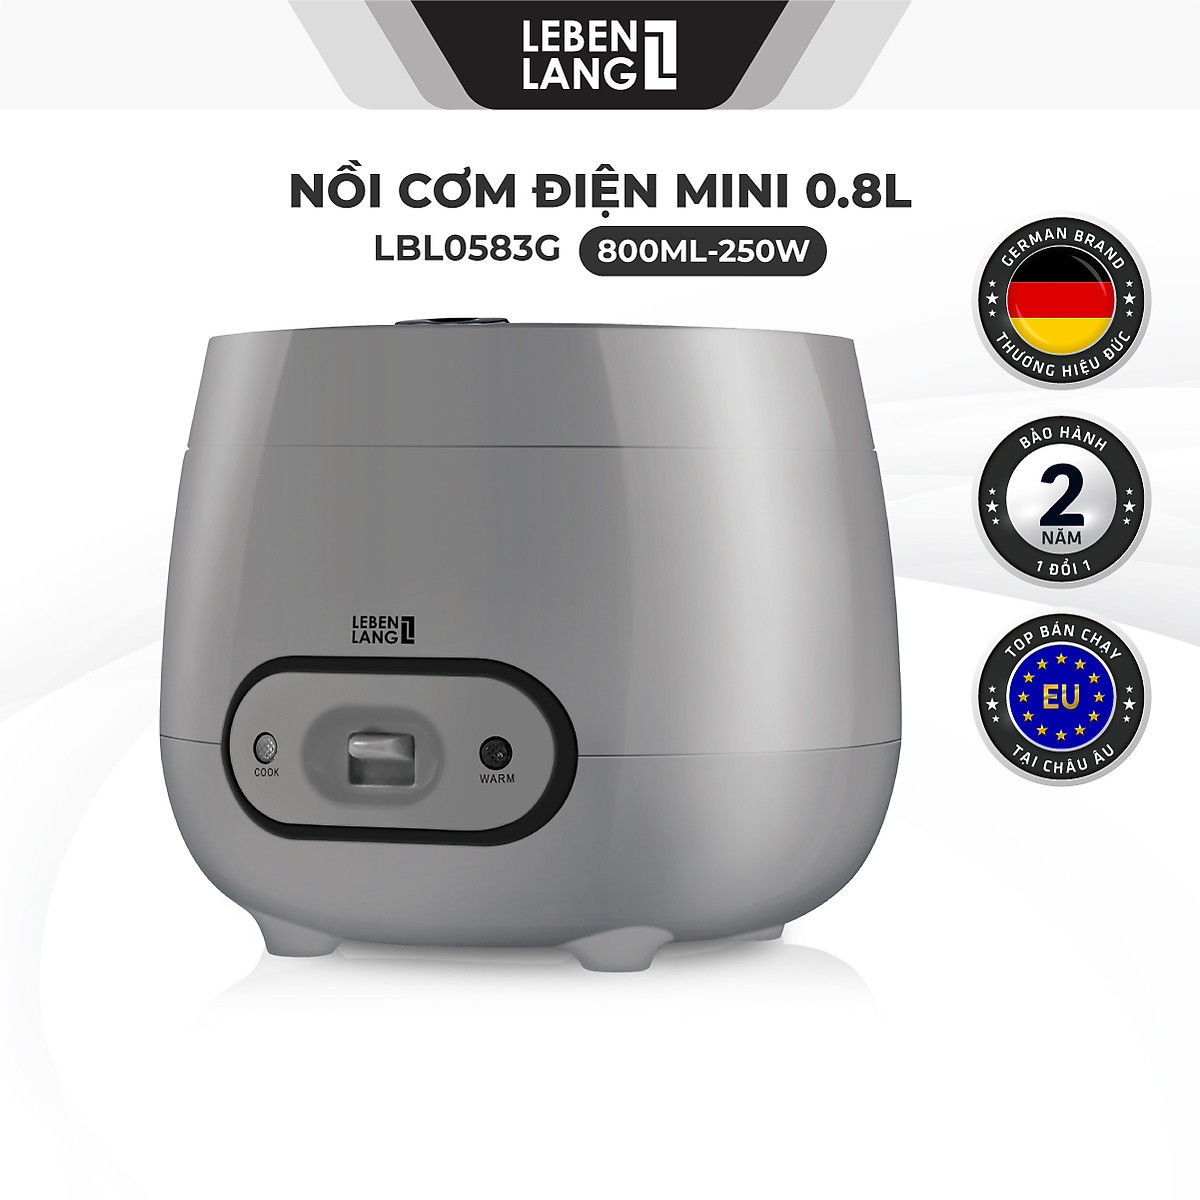 Nồi cơm điện mini Lebenlang LBL0583G dung tích 800ml, nhỏ gọn hàng Đức, bảo hành 24 tháng